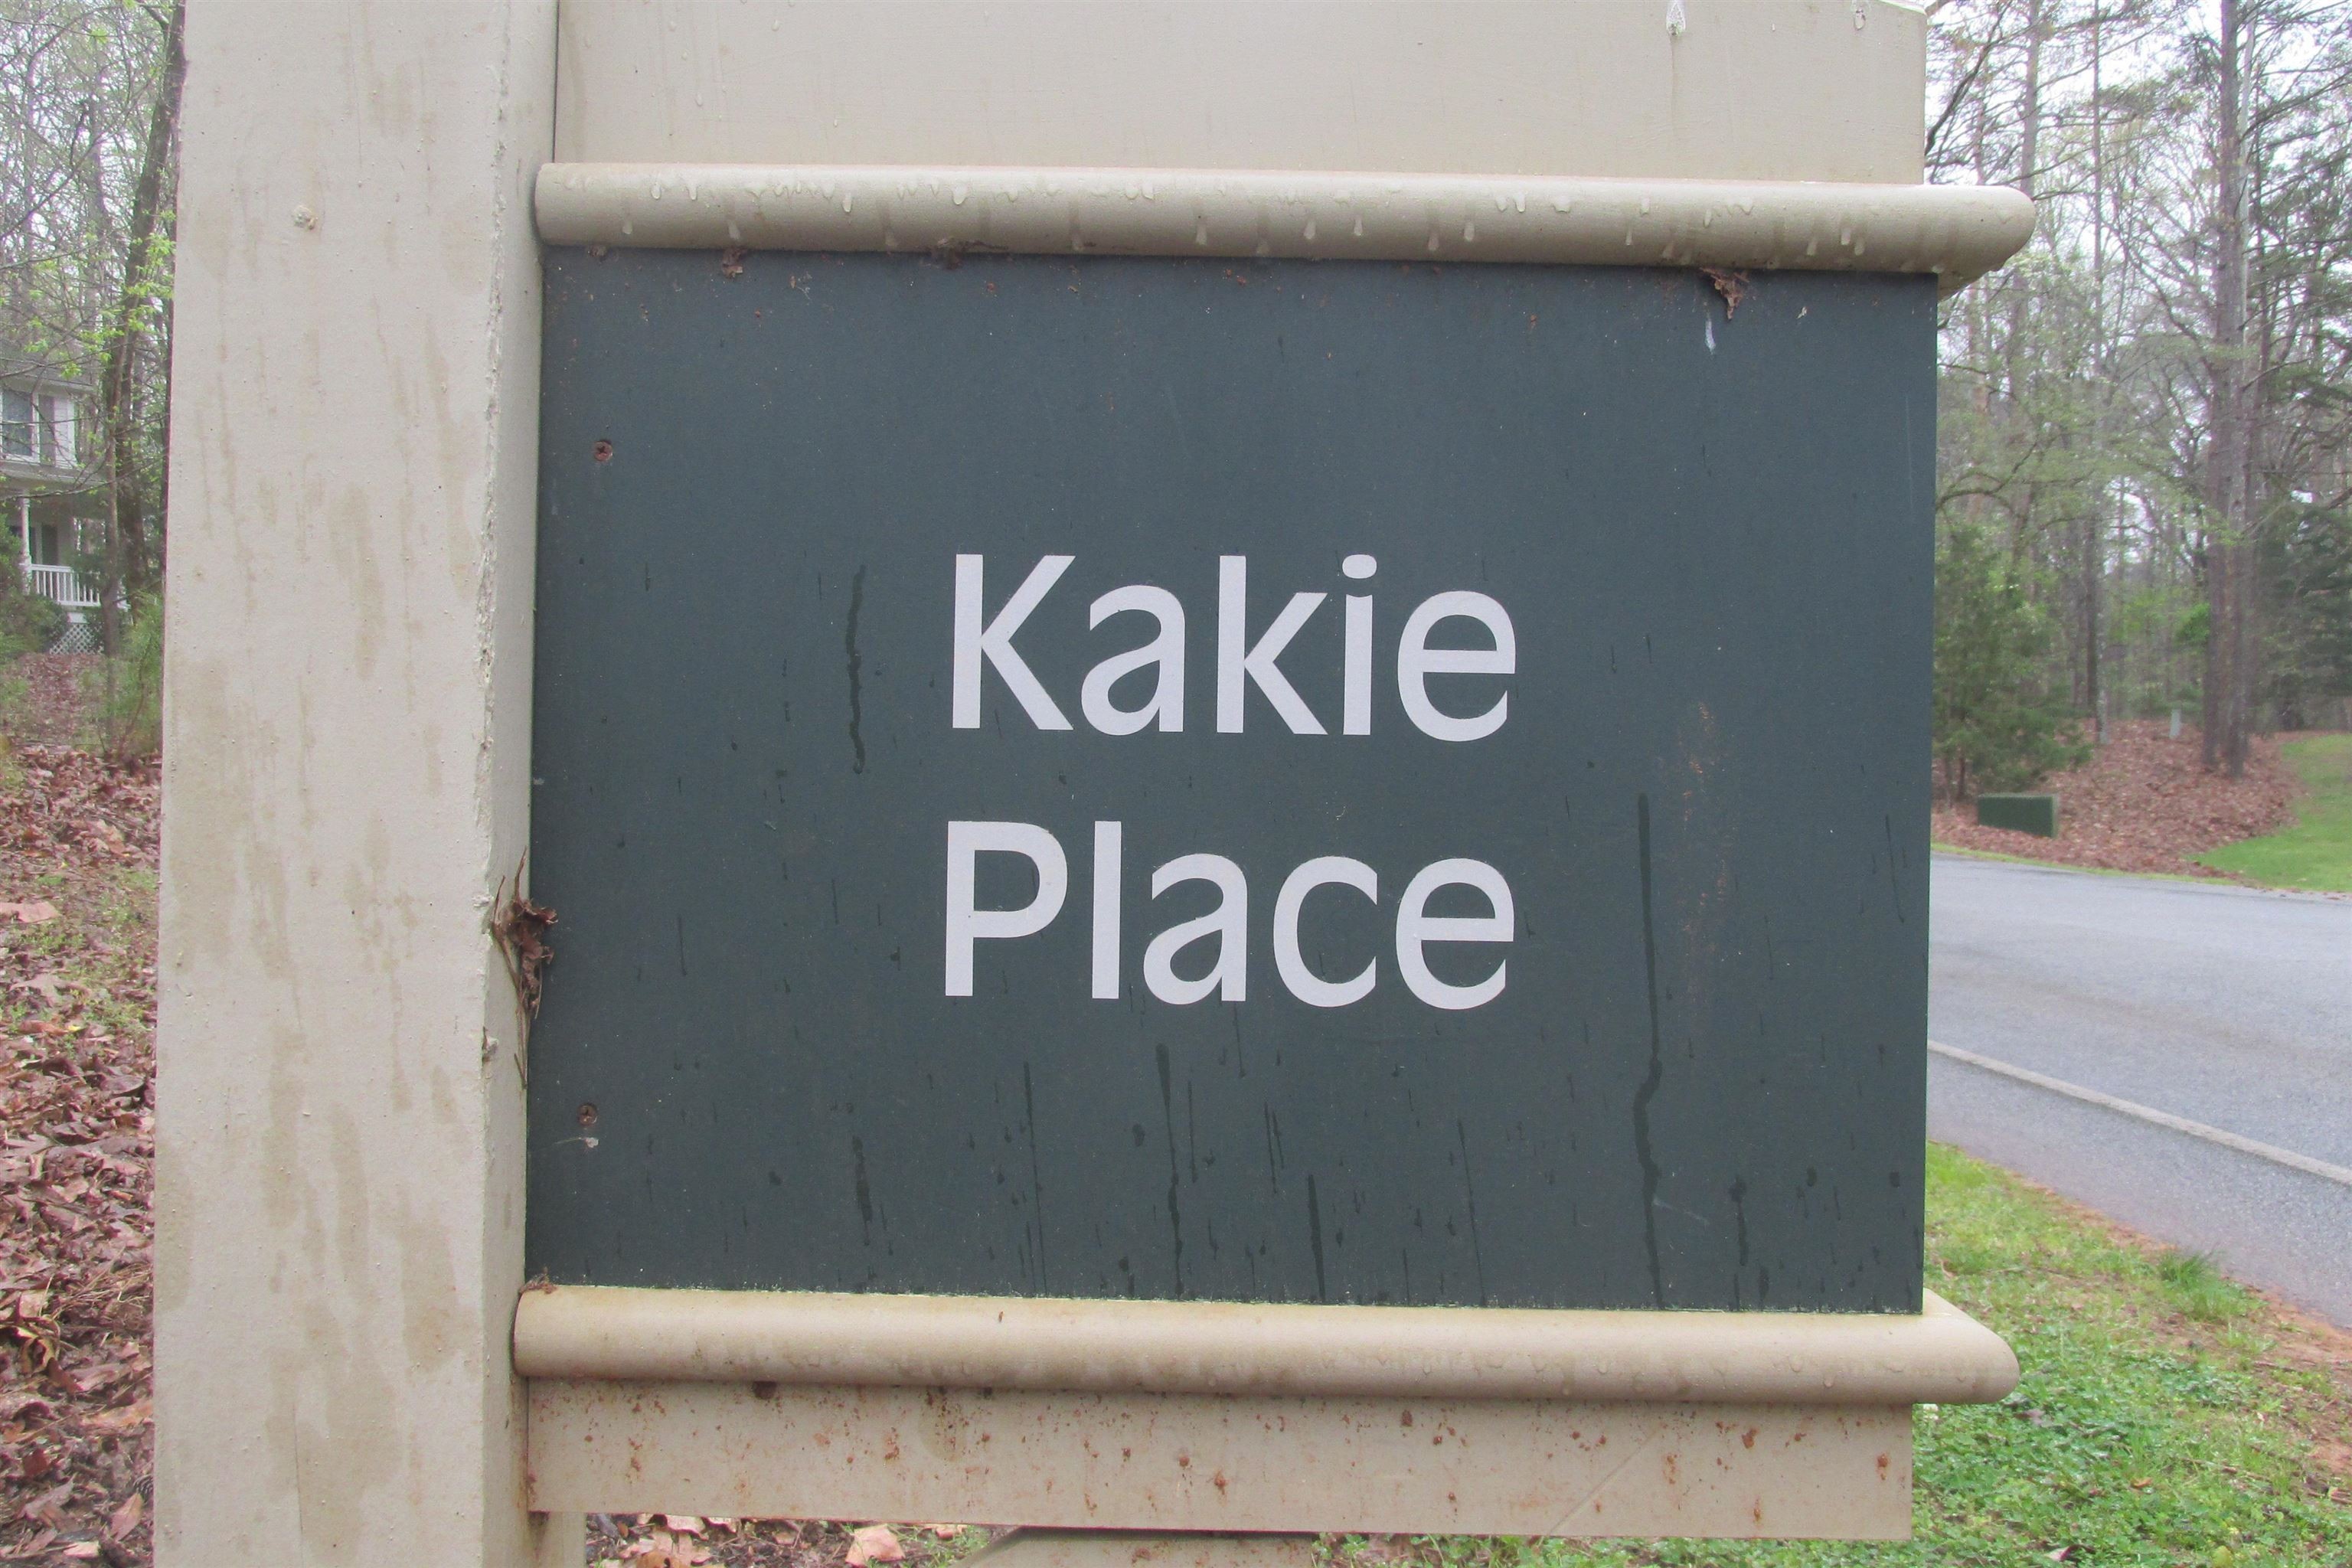 1. 1000 Kakie Place